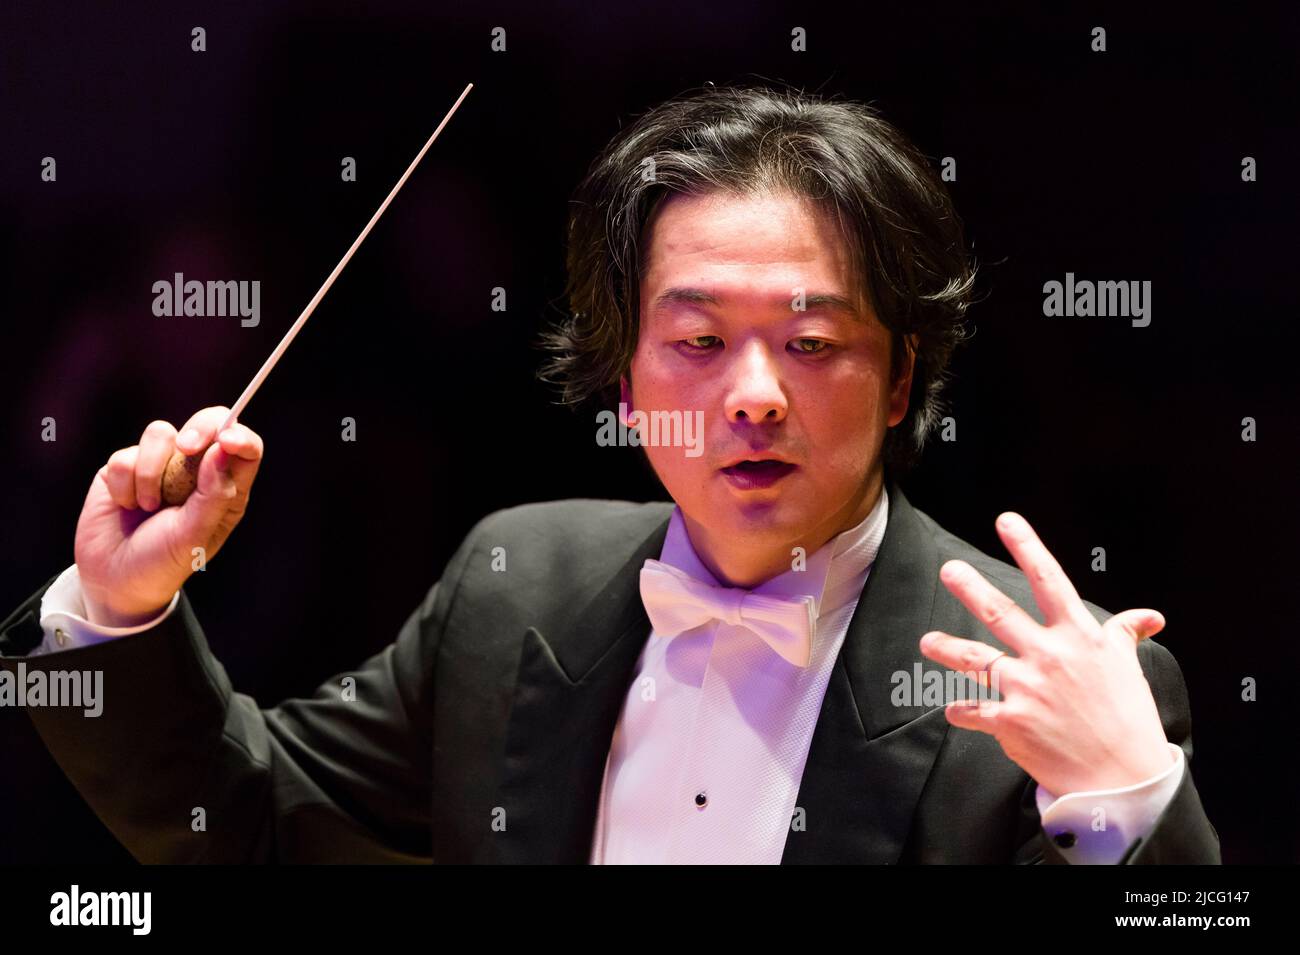 Orchestra da camera inglese, diretta dal direttore giapponese Daisuke Muranaka. Cadogan Hall, Sloane Terrace, Chelsea, Londra, Regno Unito. 18 Mar 2015 Foto Stock